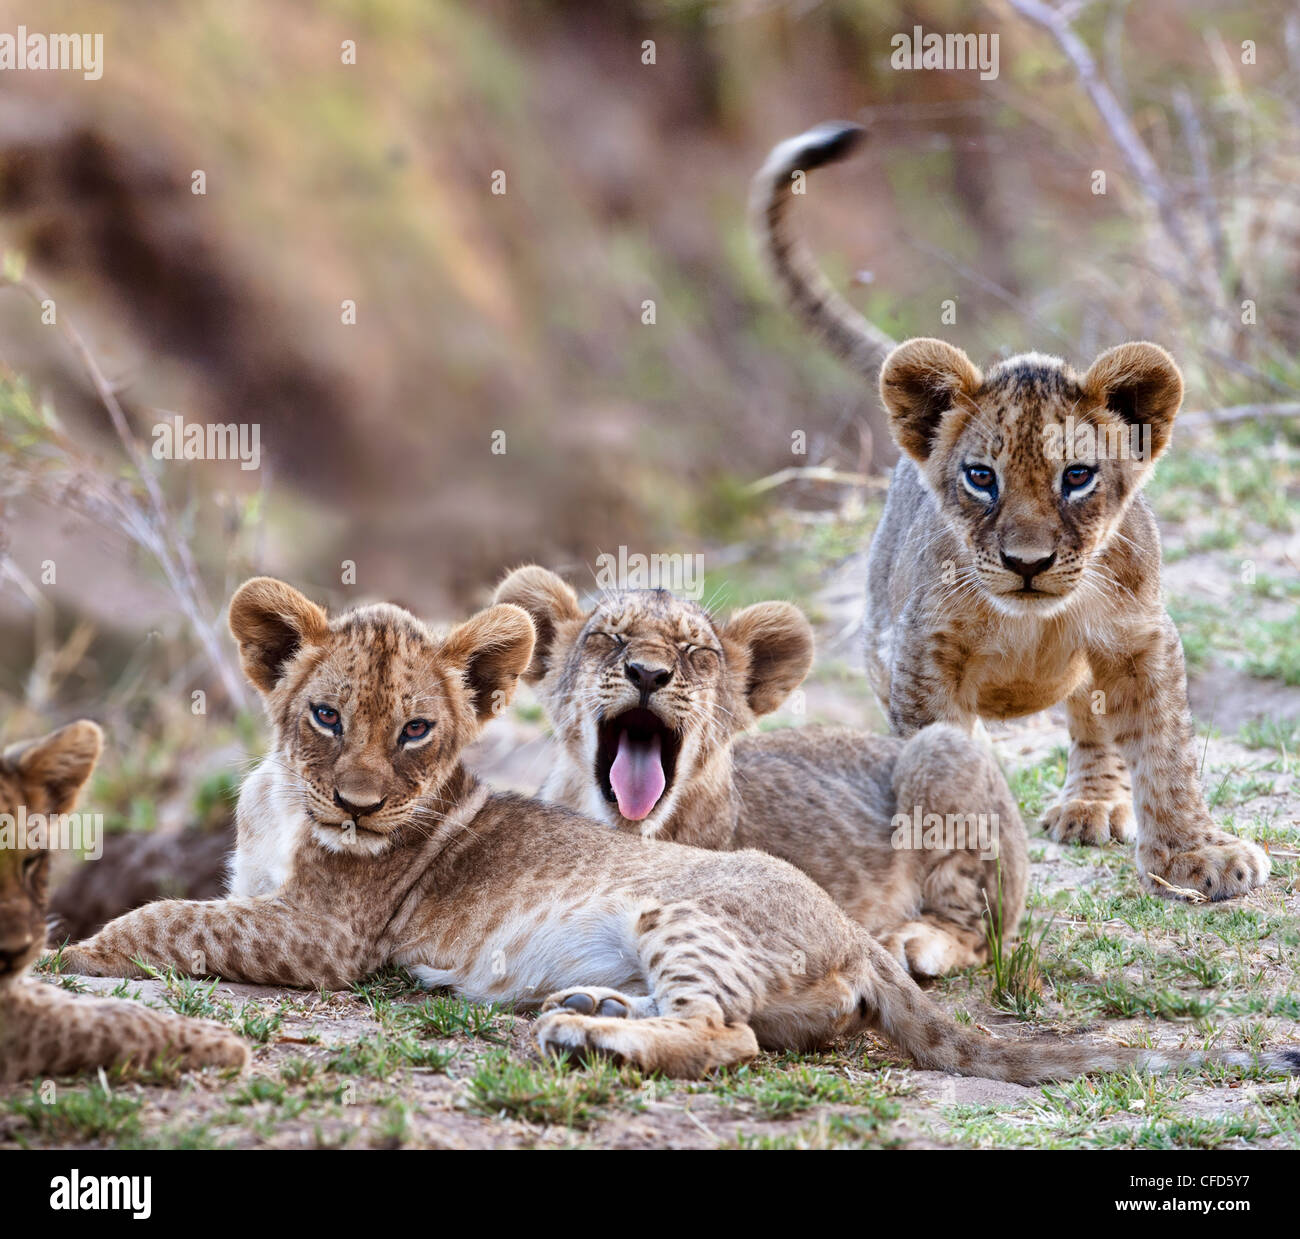 L'African Lion cubs - environ 3 mois - près de la Rivière Luangwa. South Luangwa National Park, Zambie Banque D'Images